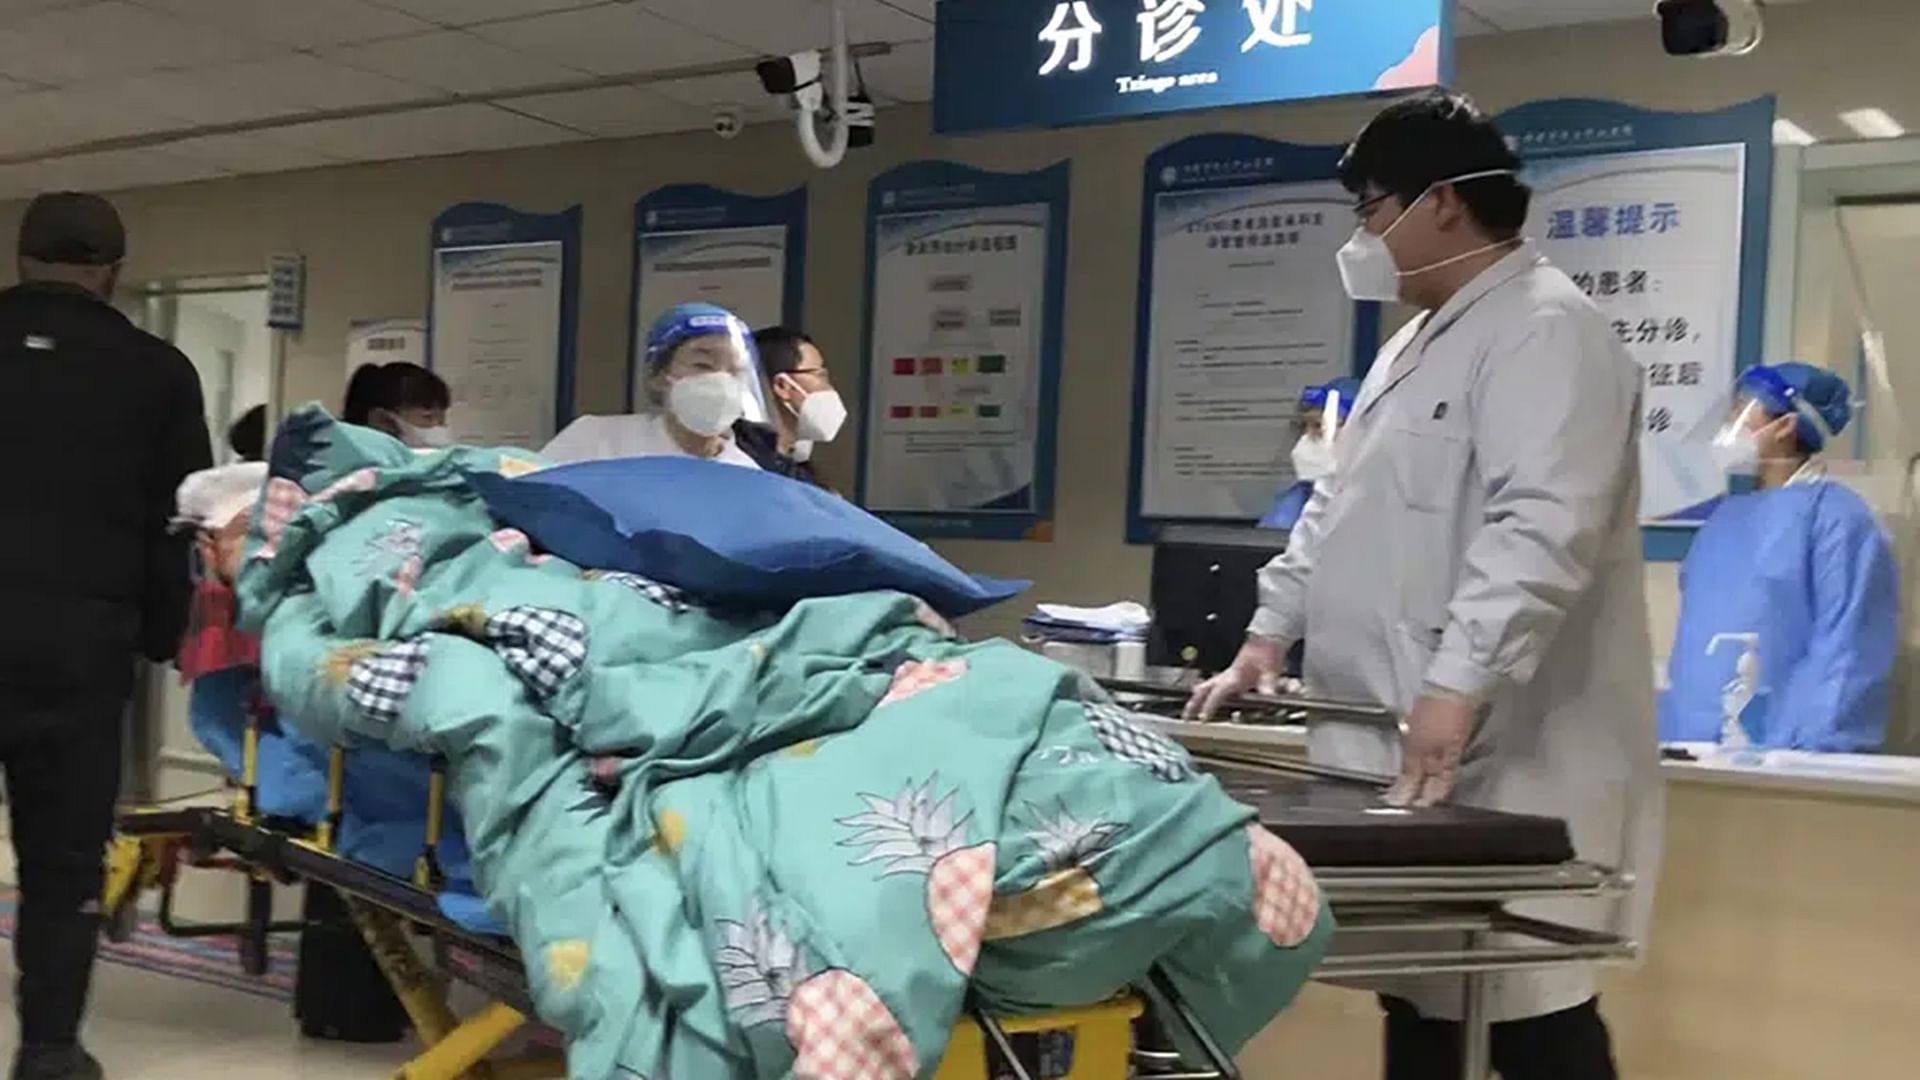 Covid19 In China:सरकारी आंकड़ों में भी नियंत्रण में नहीं मामले, अस्पतालों  के हॉल में ही मरीजों का हो रहा इलाज - Coronavirus In China Covid19 Wave  Proving Brutal For Beijing As ...